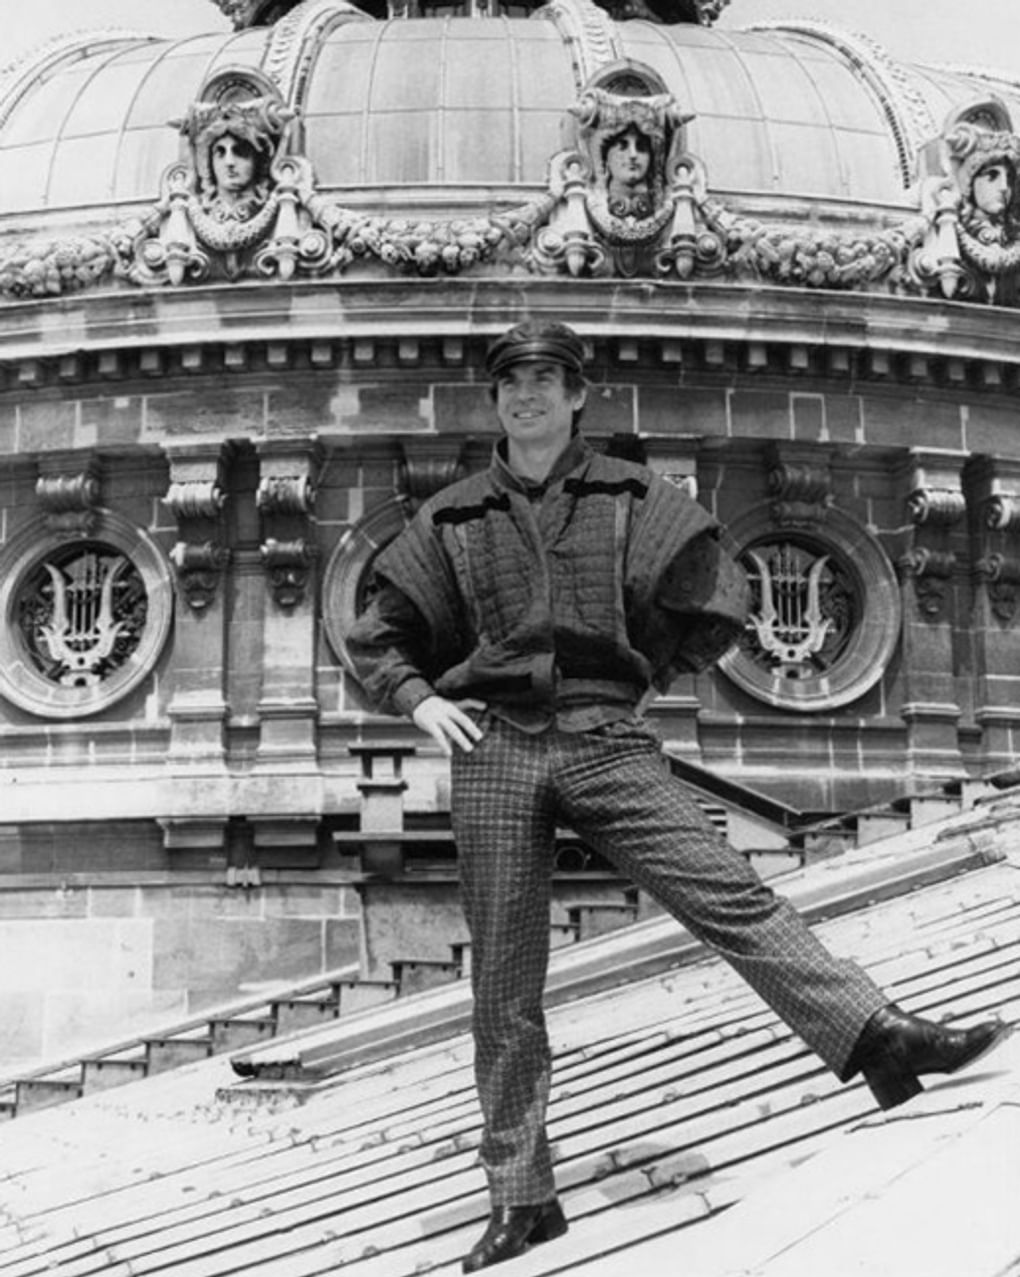 Рудольф Нуреев на крыше театра Гранд-Опера, Париж, Франция. 1980-е годы. Фотография: Masson Colette / Санкт-Петербургский государственный музей театрального и музыкального искусства, Санкт-Петербург